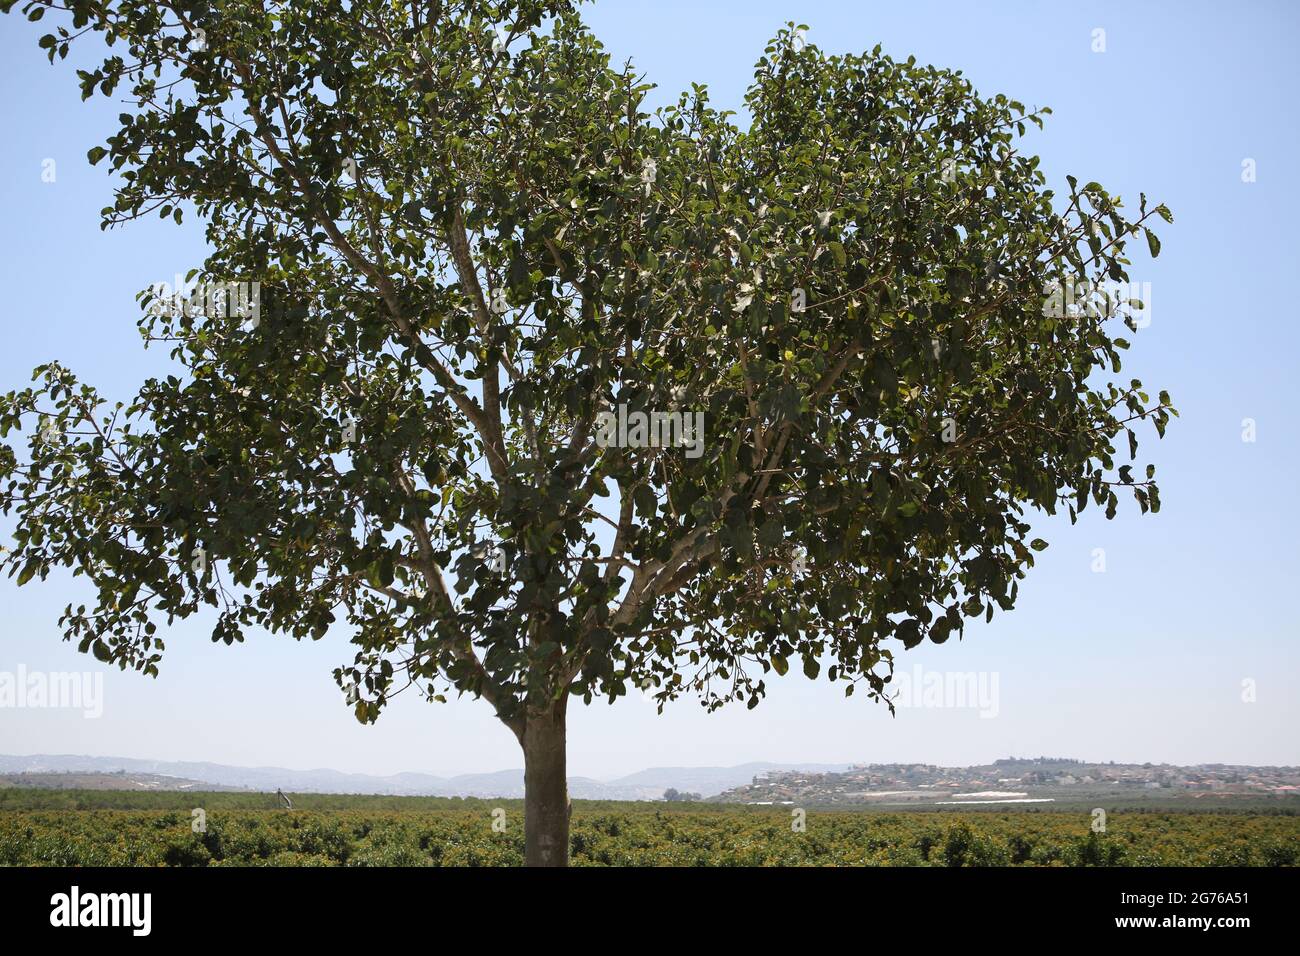 Maulbeerfeigenbaum, Ficus Sycomorus oder Feige - Maulbeere der Moraceae-Familie, auf einem solchen Baum saß biblische Zachäus, dahinter, Shephelah und Samaria Hills. Stockfoto